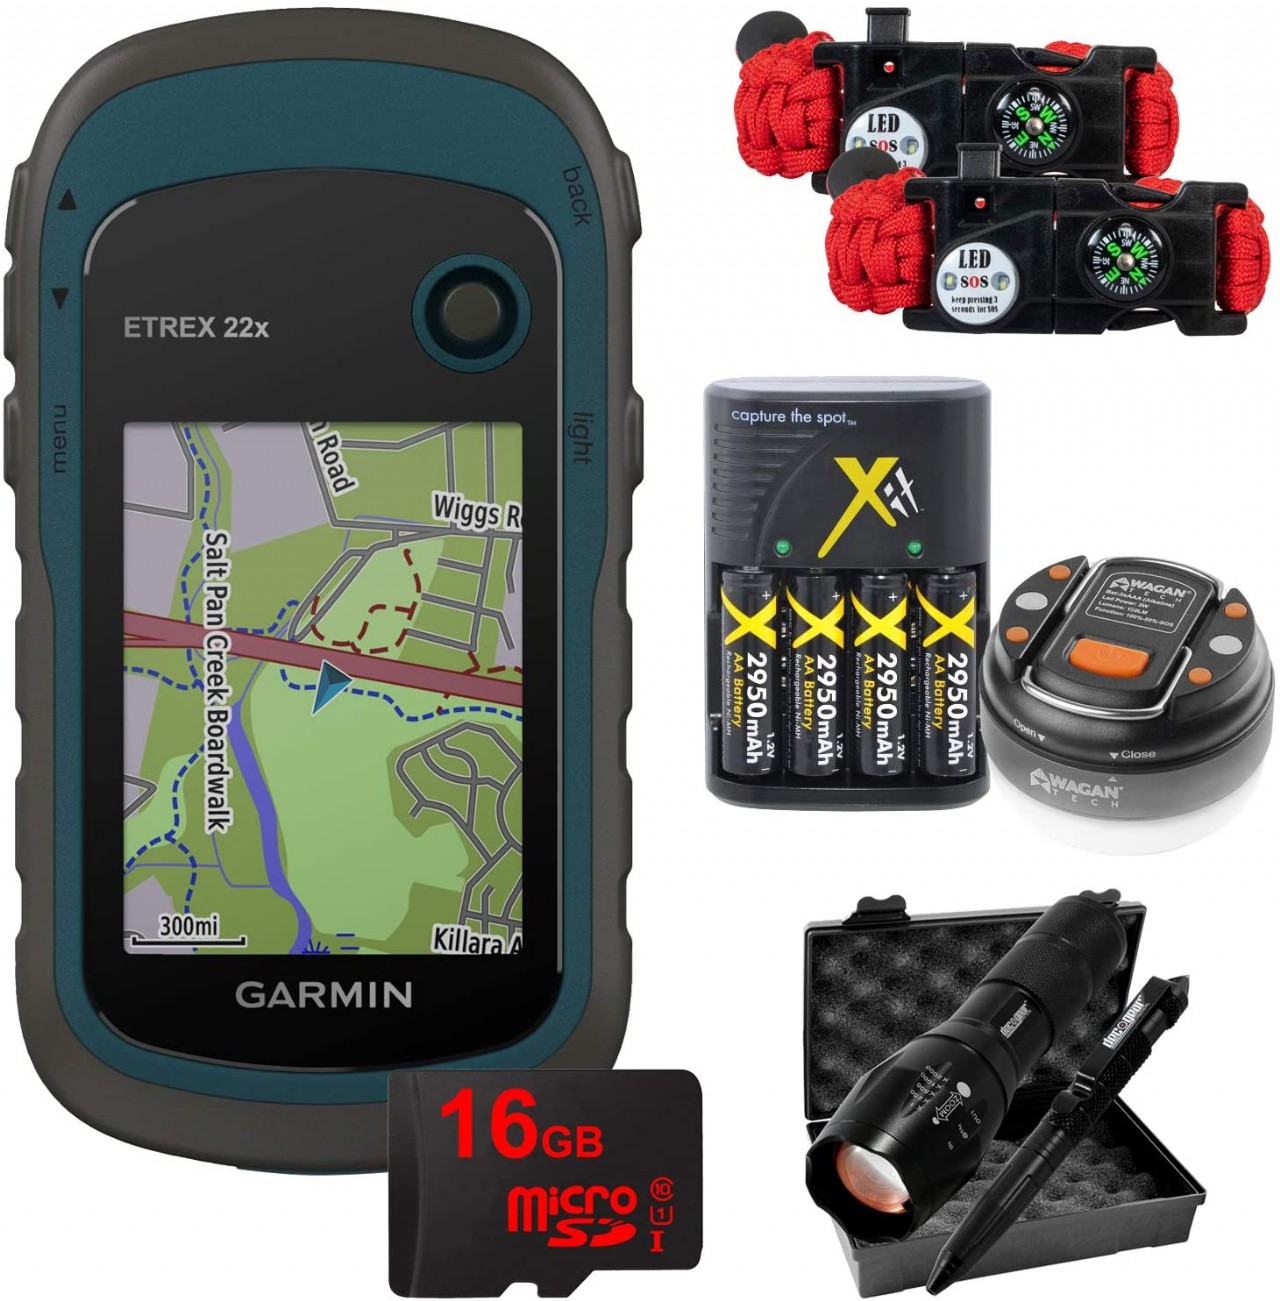 Garmin eTrex 22x: Rugged Handheld GPS with 16GB Camping & Hiking Bundle